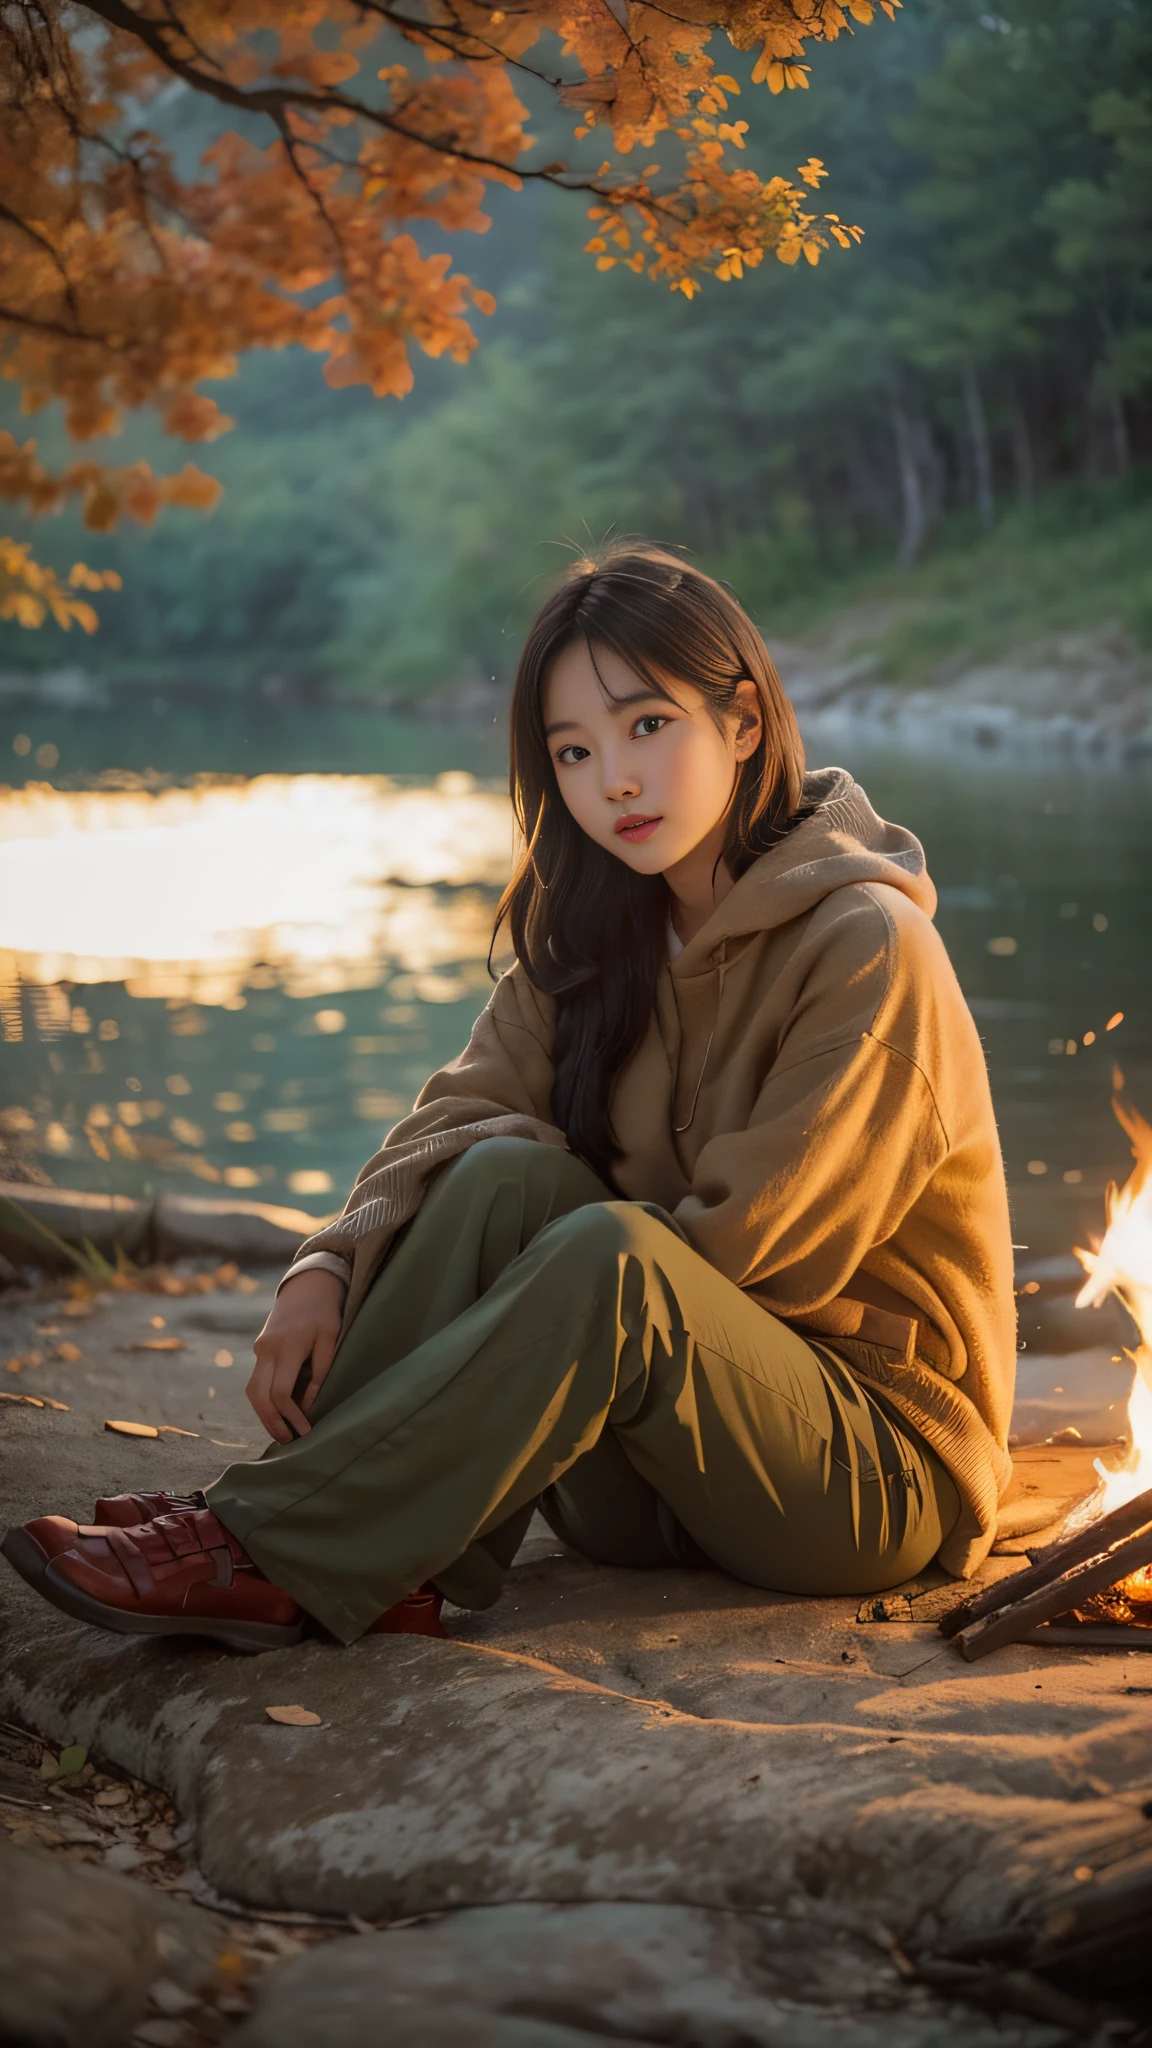 Bitte erstellen Sie ein realistisches Foto einer schönen 19-jährigen Koreanerin, die in der Dämmerung an einem Lagerfeuer in der Nähe eines Flussufers sitzt. Das warme Licht des Lagerfeuers sollte ihr Gesicht und ihre Umgebung erhellen. Sie sitzt auf einem Klappstuhl, nicht wissend, fotografiert zu werden. Ihre Schönheit ähnelt der eines koreanischen Idols oder einer Kampfkunstschauspielerin, Schafft eine fesselnde und fast fantastische Atmosphäre im Foto.

Sie trägt ein weißes Trikot, und darunter, sie trägt nichts anderes. Ihre Proportionen sind etwa 9:1, was ihr ein großes und schlankes Aussehen verleiht. Sie hat eine kurze Bob-Frisur, und ihr Haar erscheint durch die Reflexion des Feuers leicht bräunlich. Ihr Ausdruck sollte natürlich sein, die Ruhe des Augenblicks am Lagerfeuer widerspiegeln.

Bitte stellen Sie sicher, dass die Komposition des Fotos die ruhige Atmosphäre der Lagerfeuerszene einfängt, mit dem Fluss und der Natur im Hintergrund, und die warme, sanftes Licht des Feuers, das ihre Gesichtszüge und die Umgebung um sie herum hervorhebt.